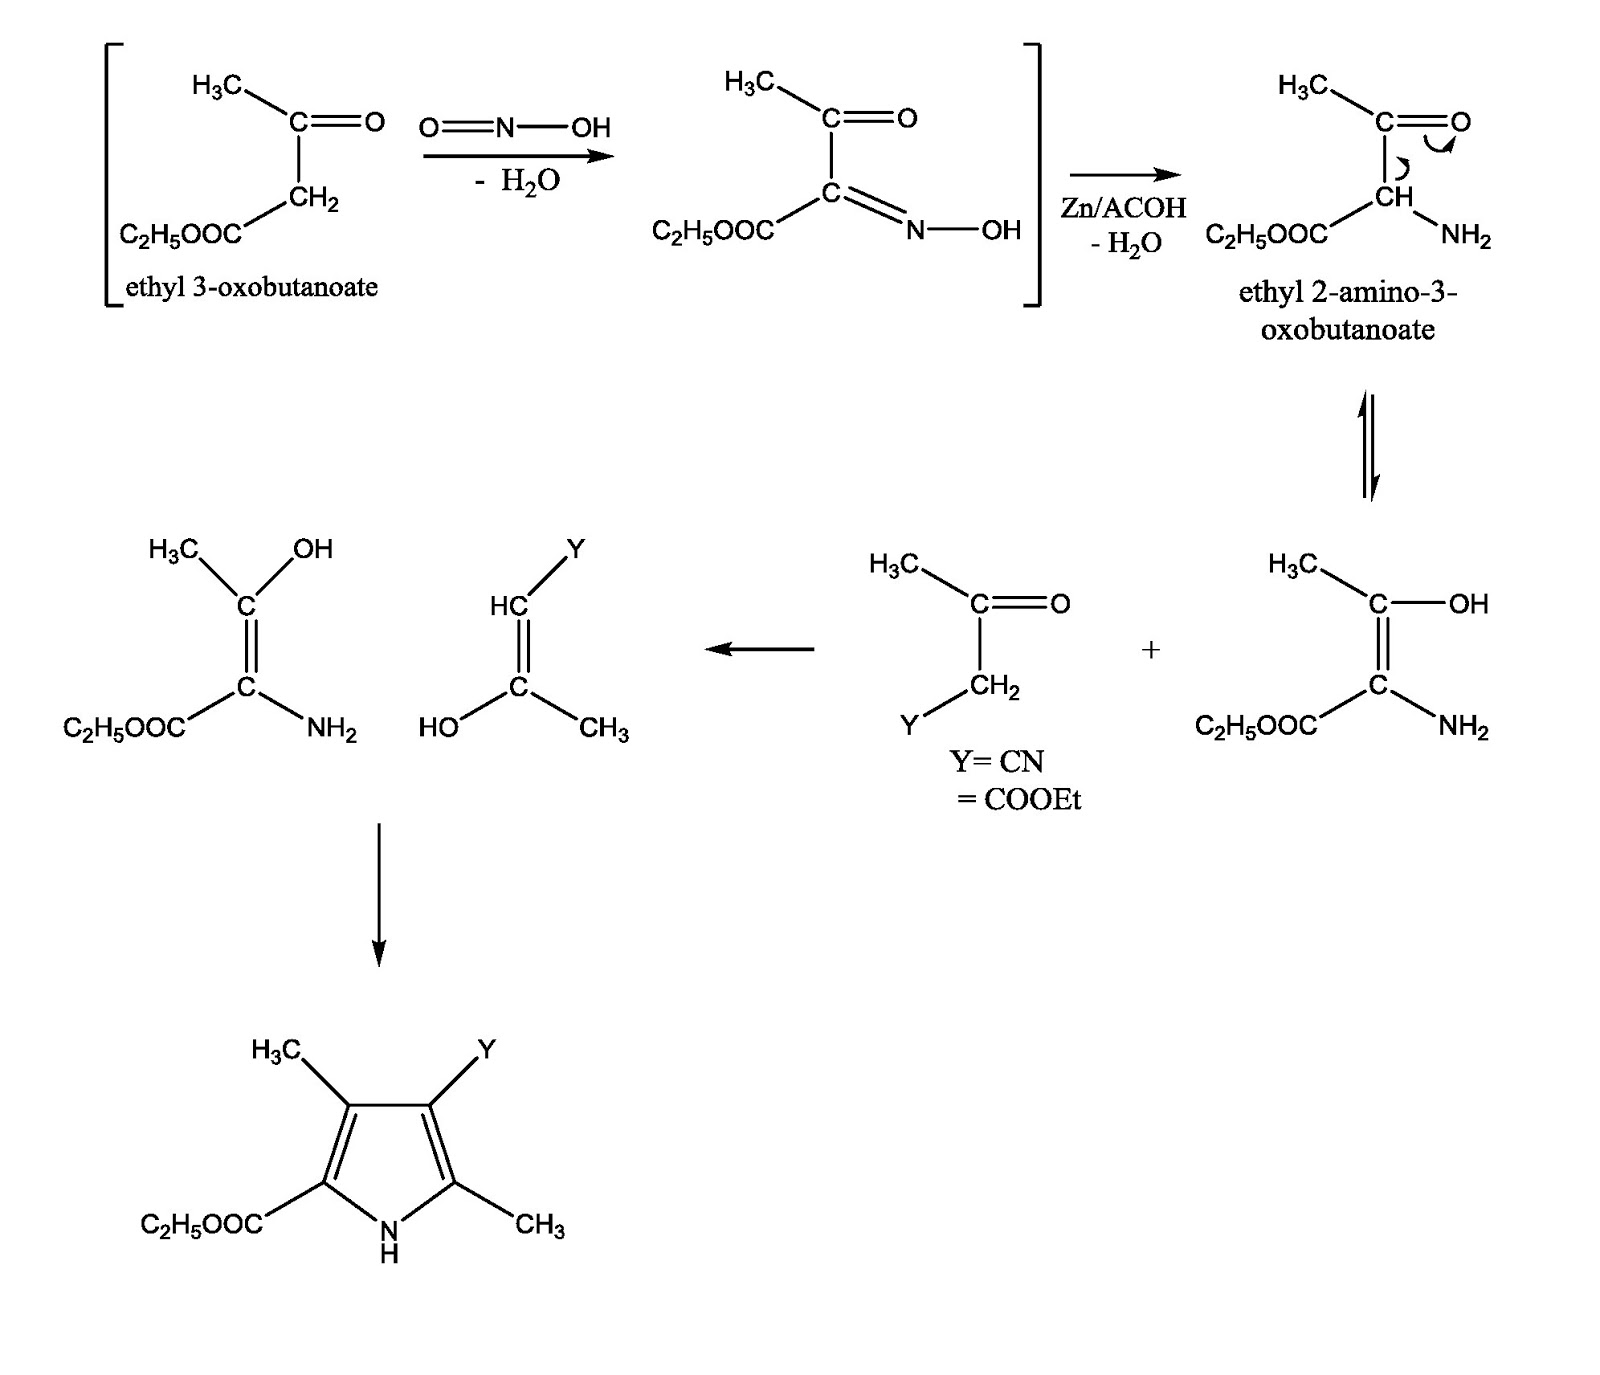 1-   طريقة كنور لتحضير البيرول  Knorr pyrrole synthesis